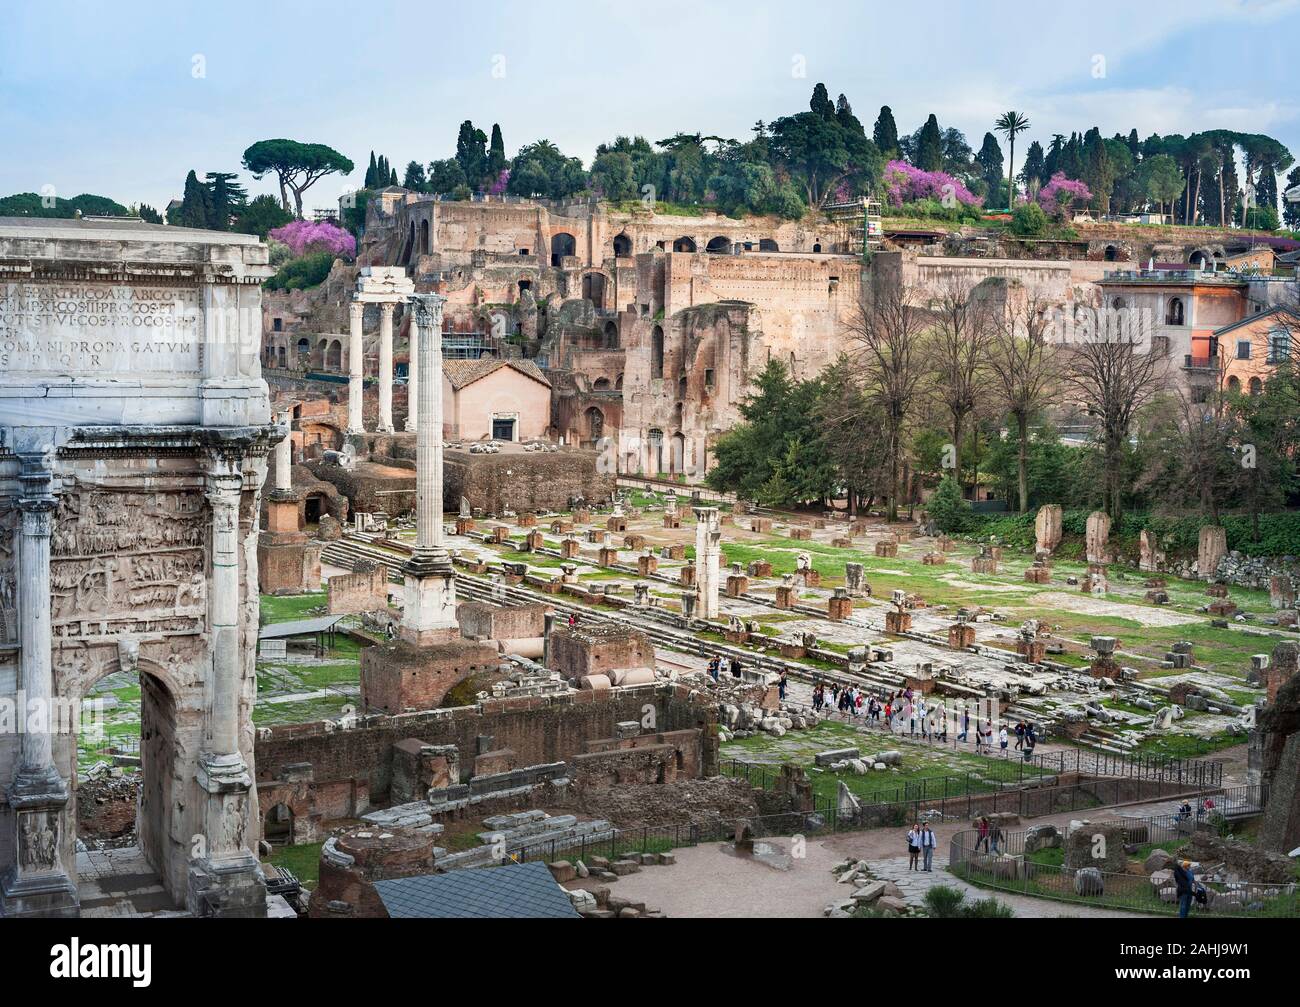 La Roma Imperial, el Foro Romano, L A R parte del arco de Septimio Severo, la Plaza Central y 3 columna templo de Cástor y Pólux y la Colina Palatina más allá Foto de stock